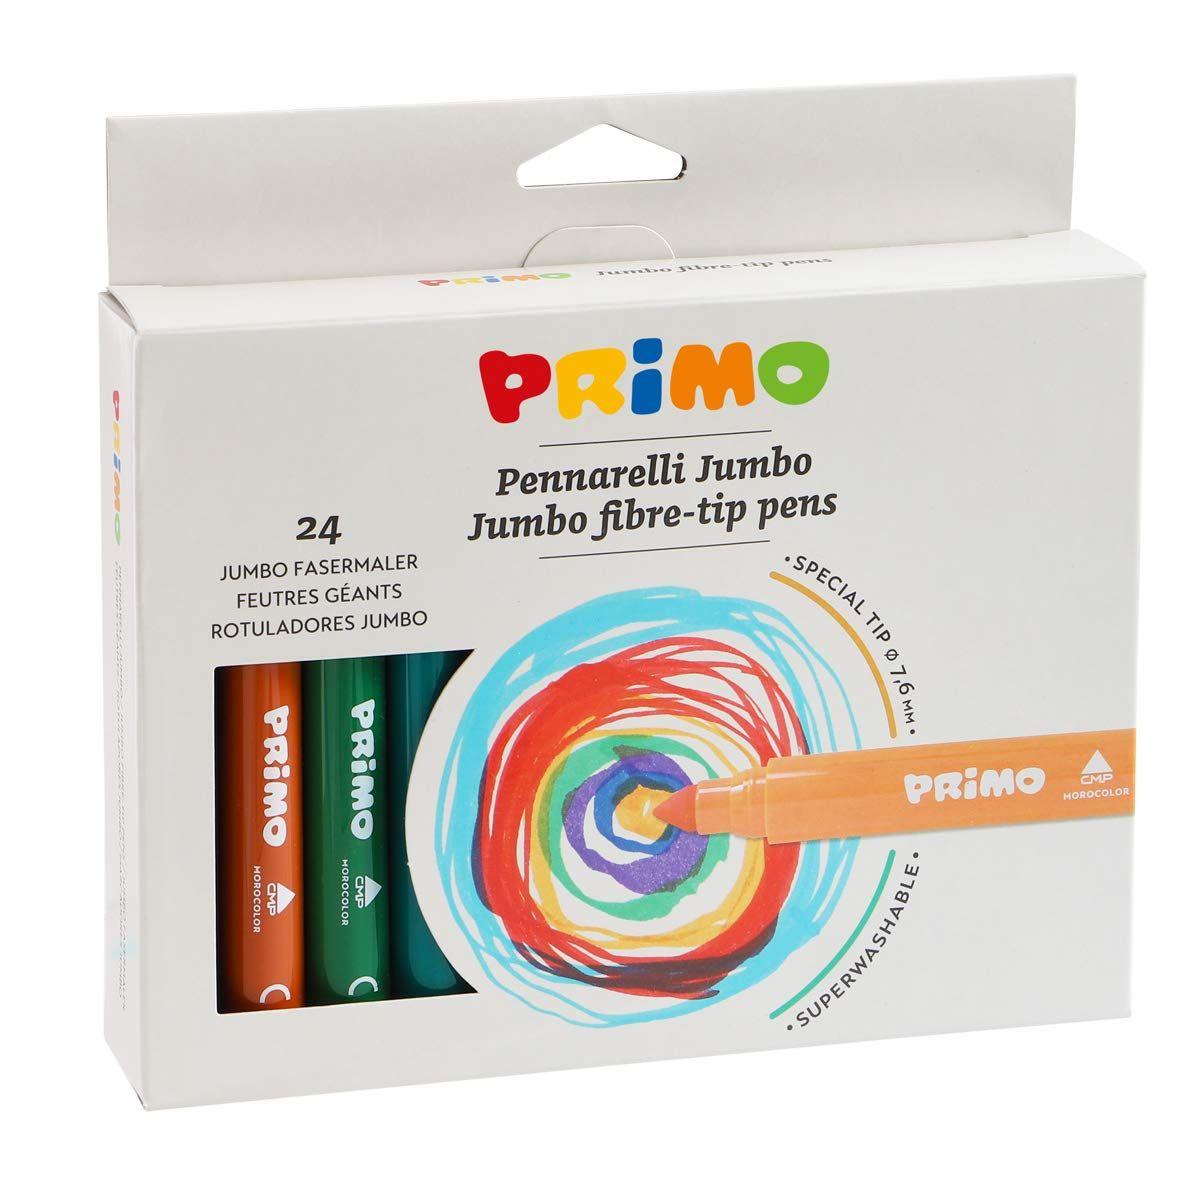 Primo - pennarelli jumbo - punta grossa - pennarelli in scatola di cartone da 24 colori brillanti e luminosi - punta grossa Ø 7.6mm - pennarelli lavabili per bambini